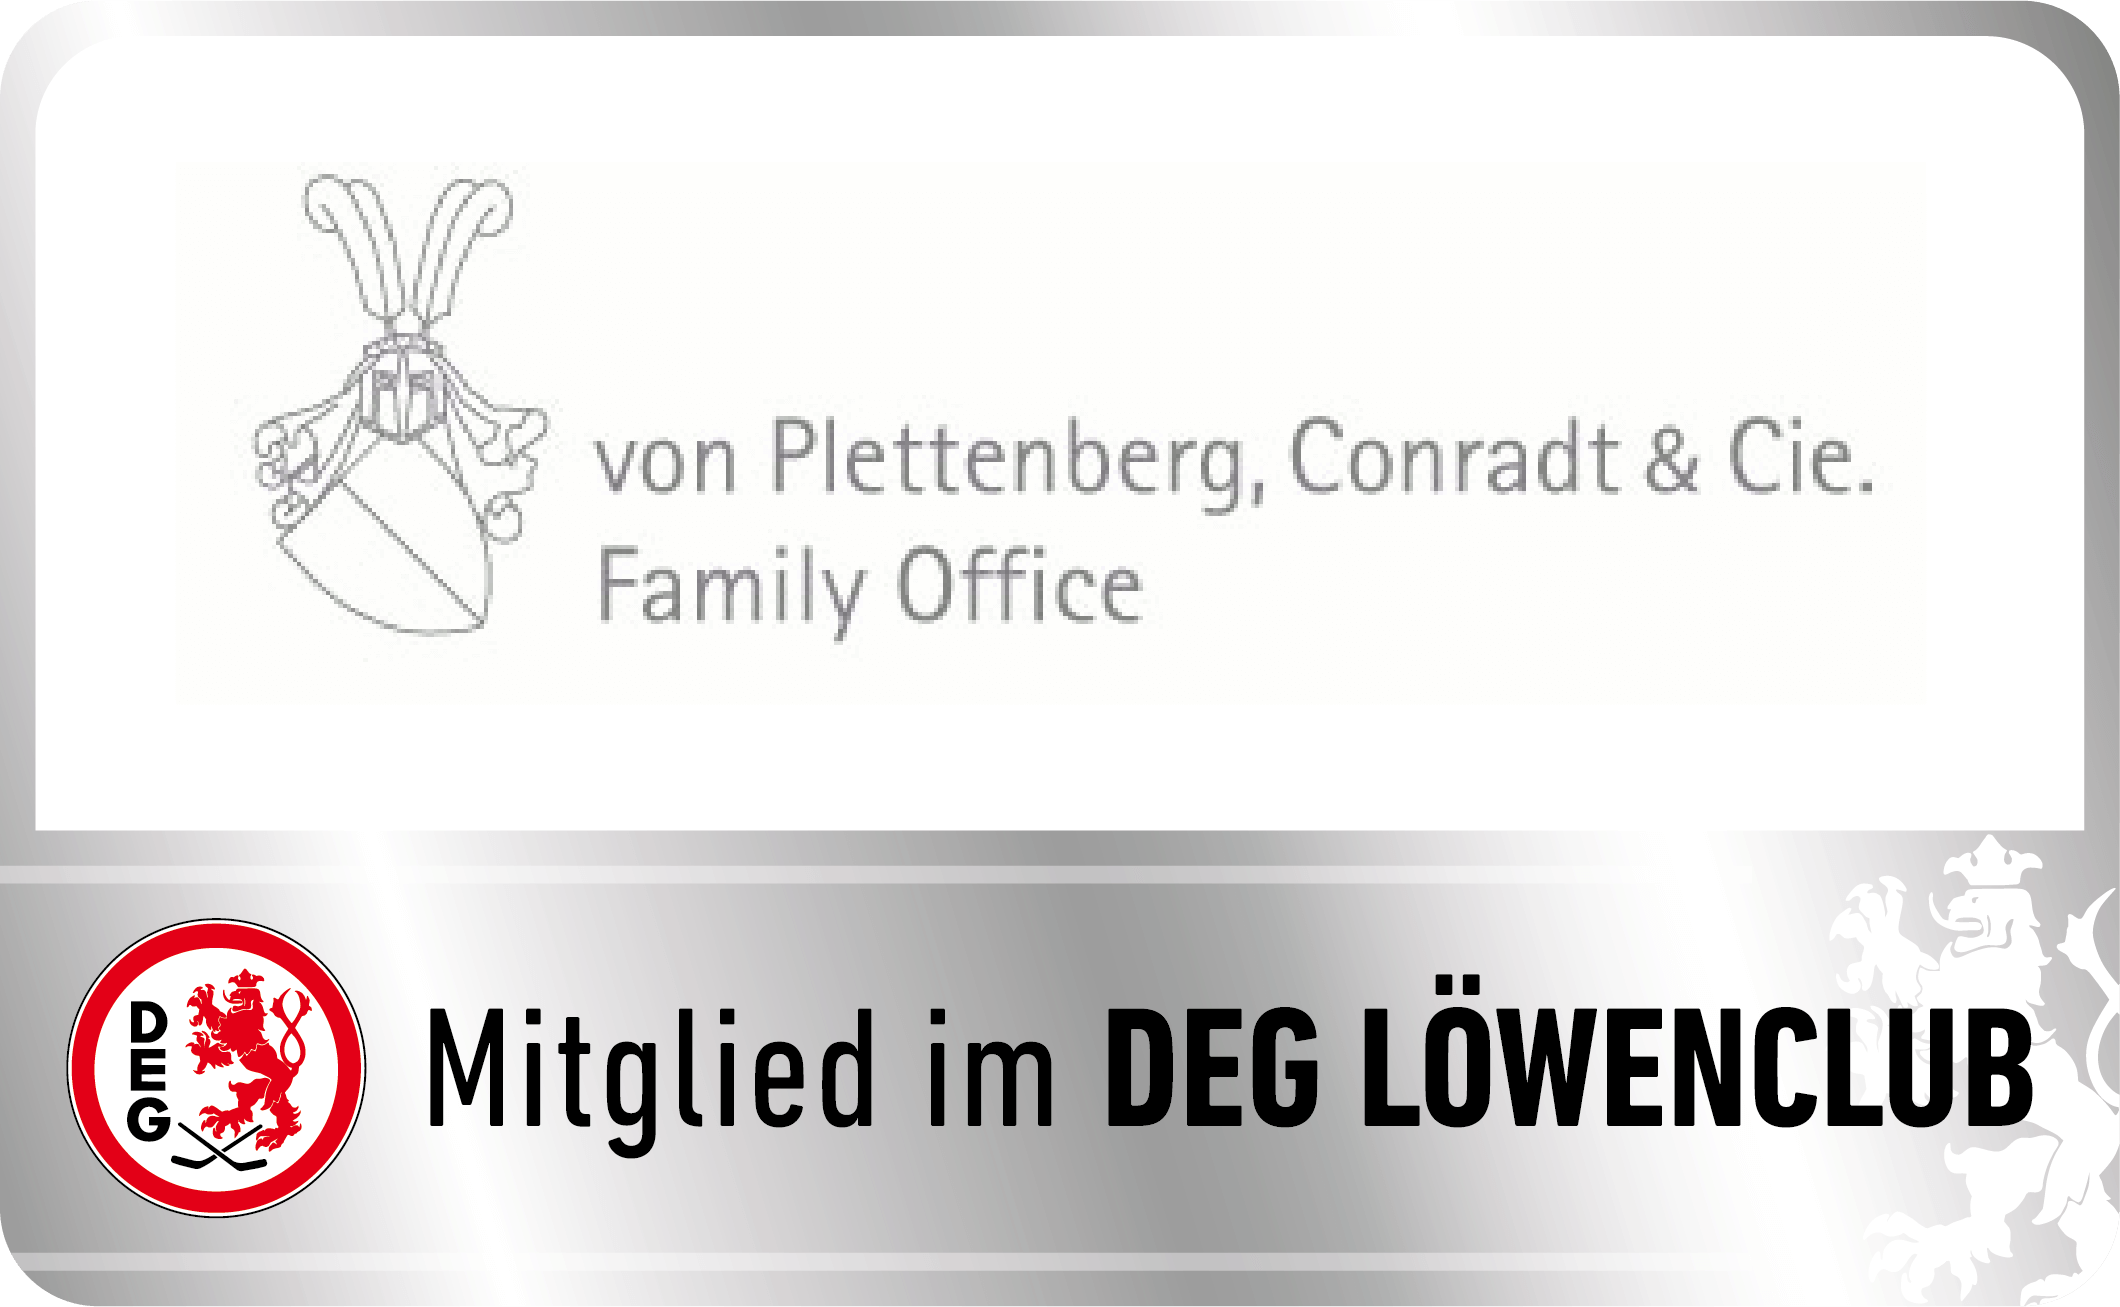 http://www.vpc-familyoffice.de/